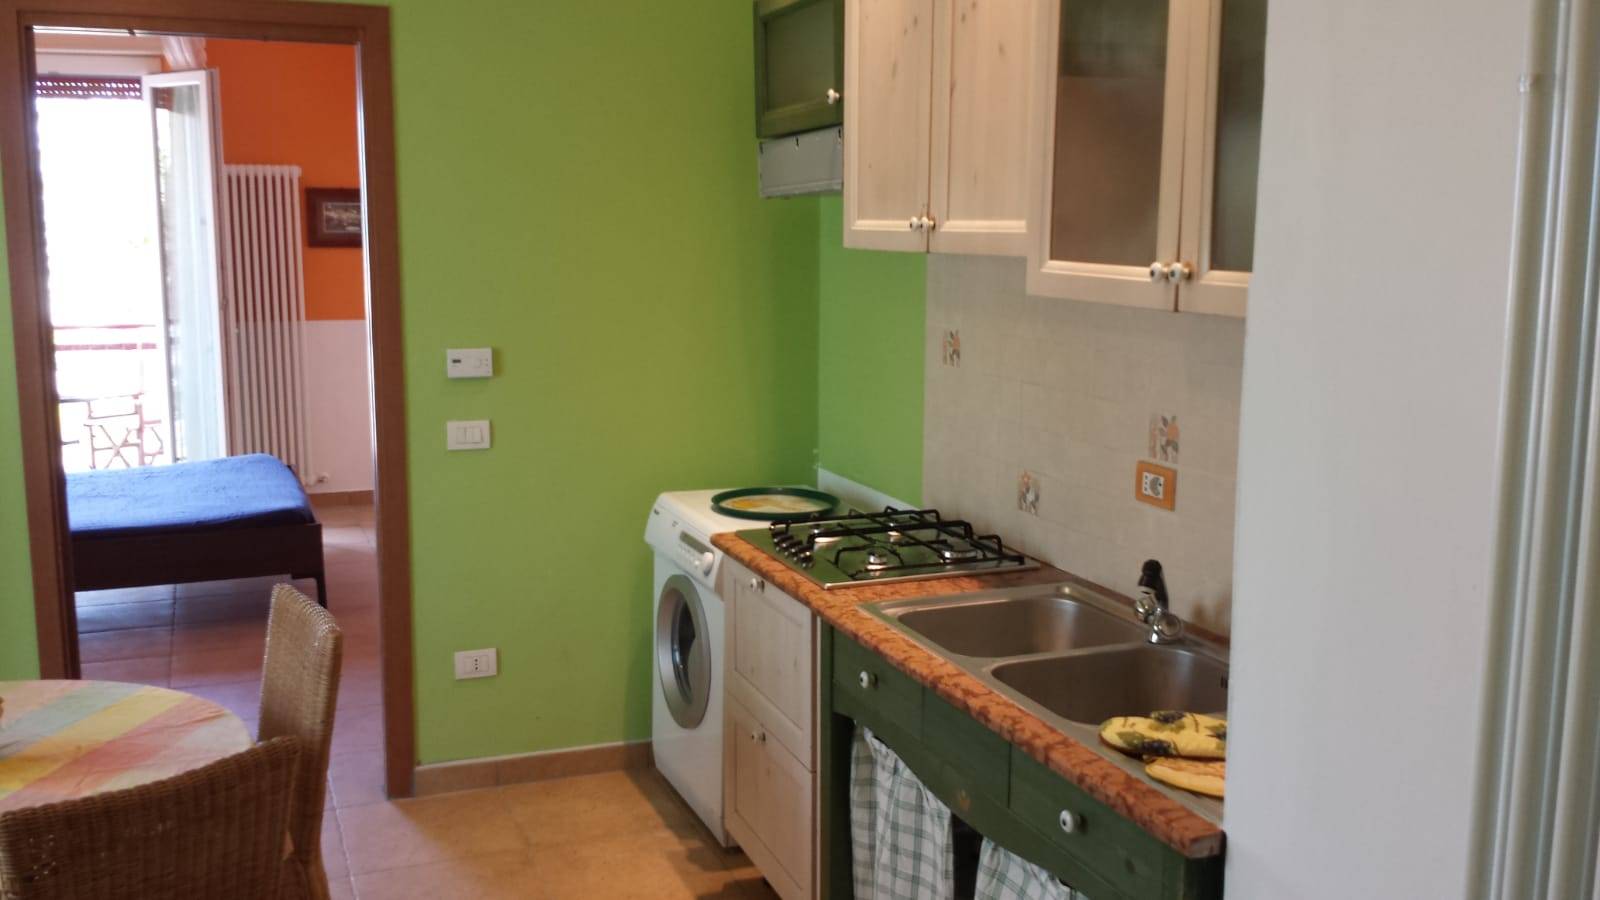 Appartamento in affitto a Rimini, 2 locali, prezzo € 600 | CambioCasa.it